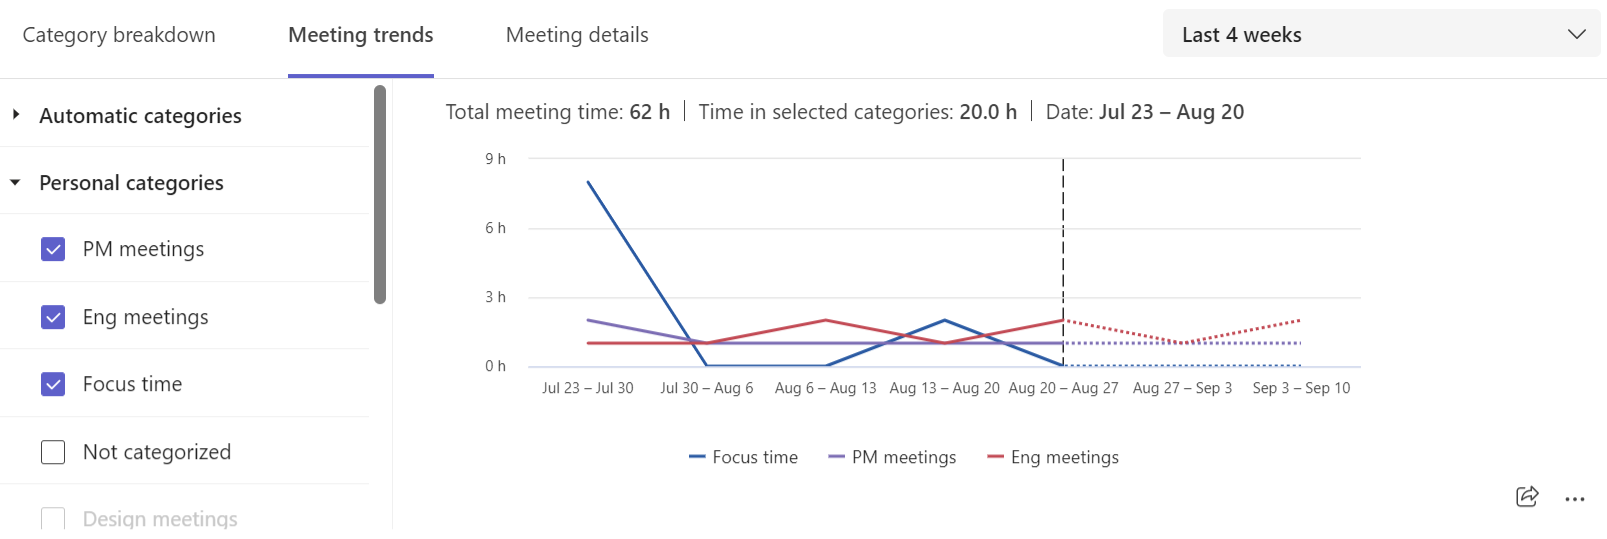 Captura de pantalla que muestra las tendencias de la categoría de reunión